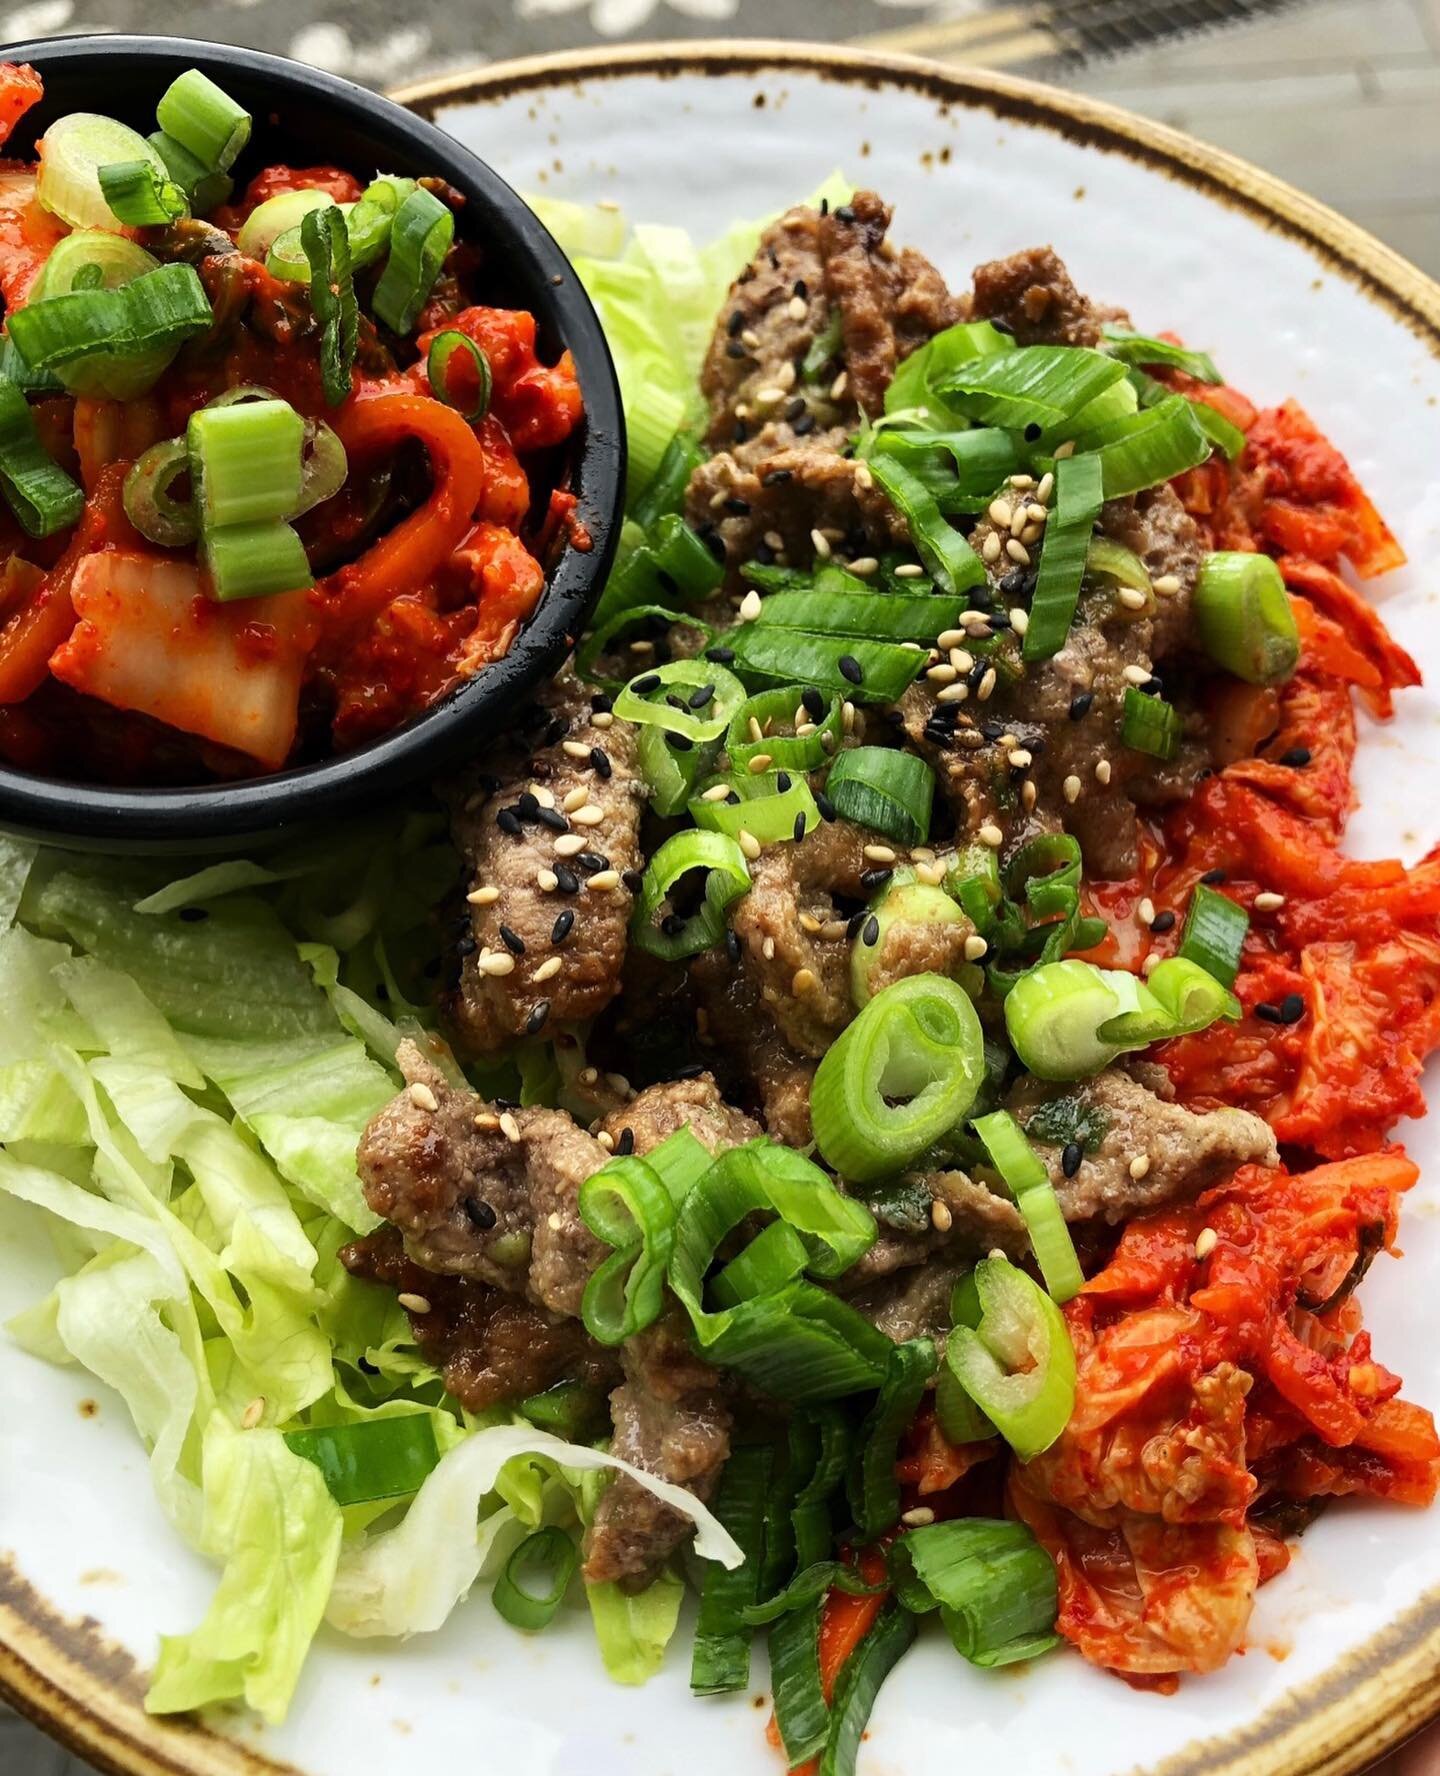 Bulgogi&hellip; with spicy Kimchi😍
&mdash;&mdash;&mdash;
#bristol #bristolfood #bristolfoodie #koreanfood #asianfood #streetfood #kimchi #bbq #bulgogi